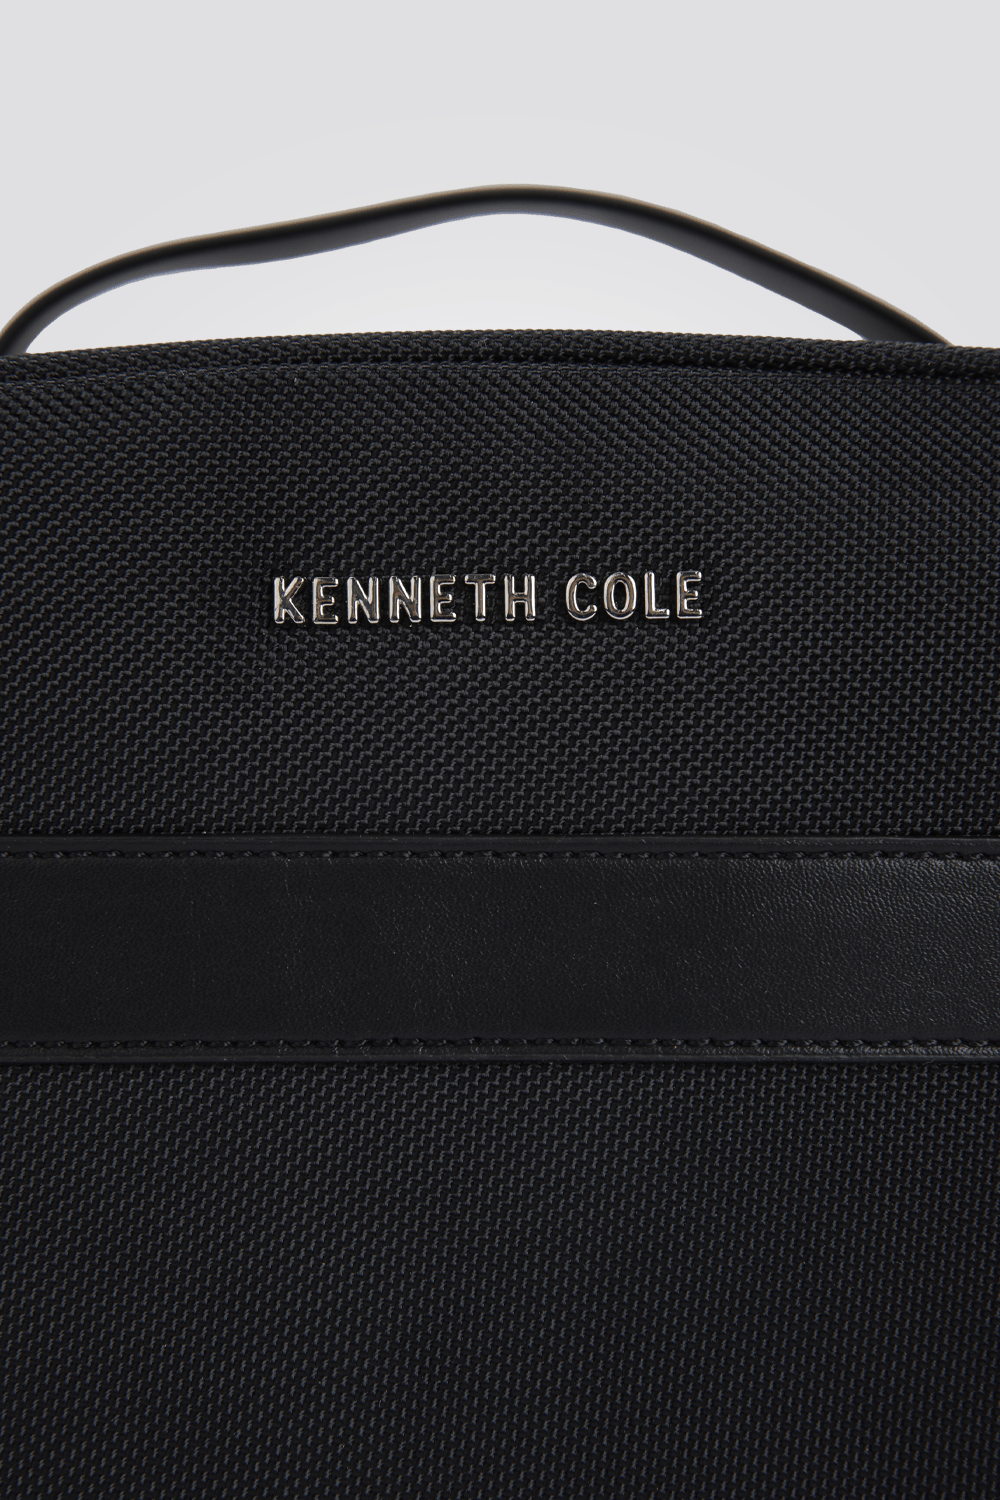 KENNETH COLE - תיק רחצה לגברים בצבע שחור - MASHBIR//365